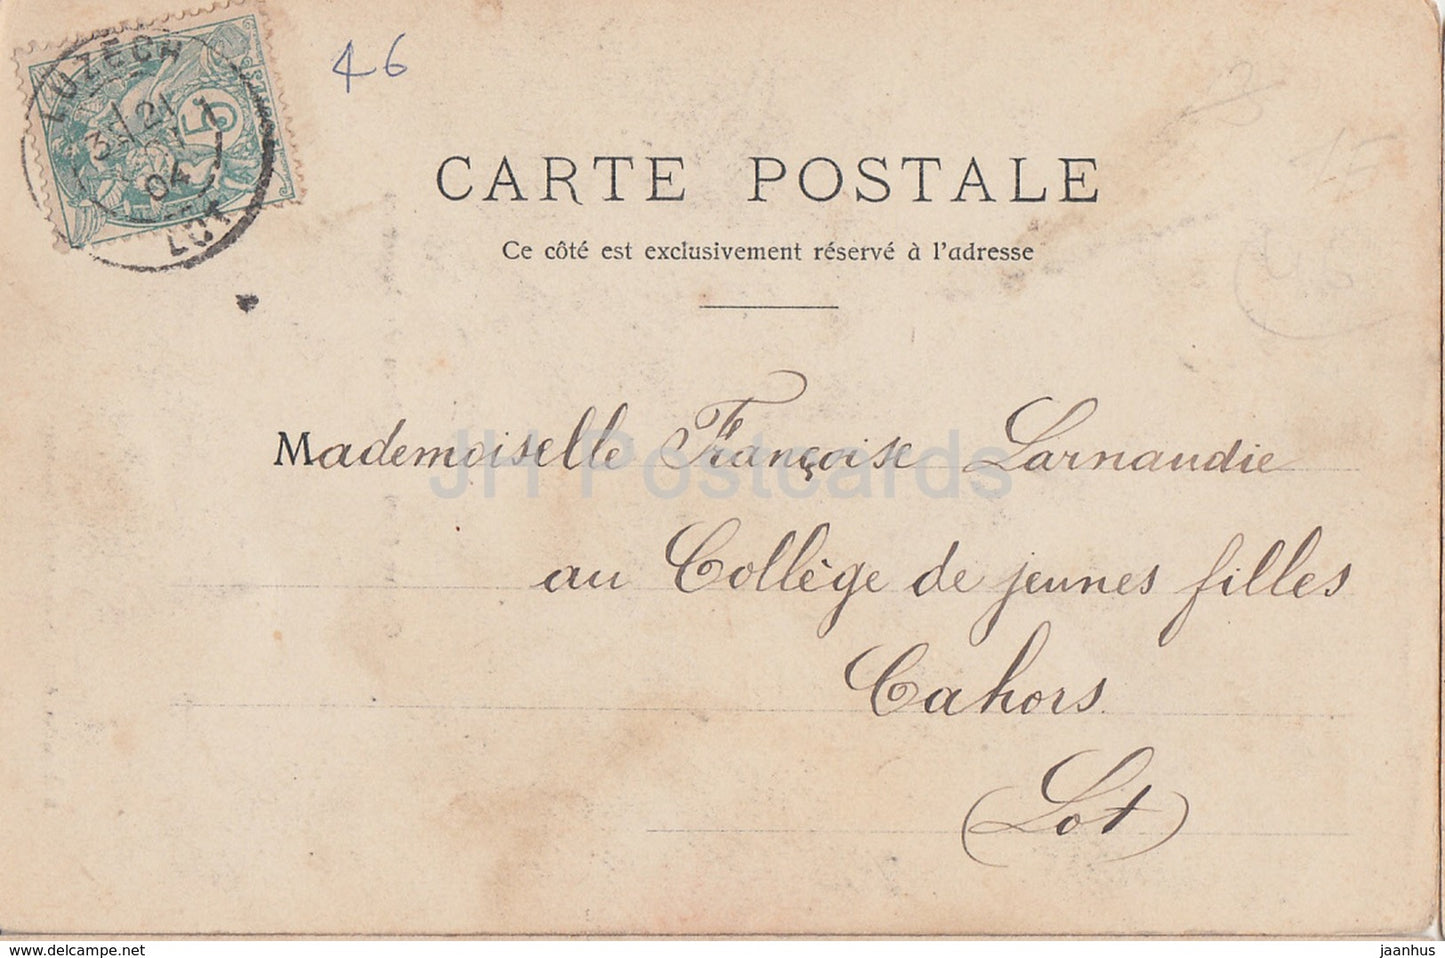 Caillac - Chateau de Lagrezette - Schloss - alte Postkarte - 1904 - Frankreich - gebraucht